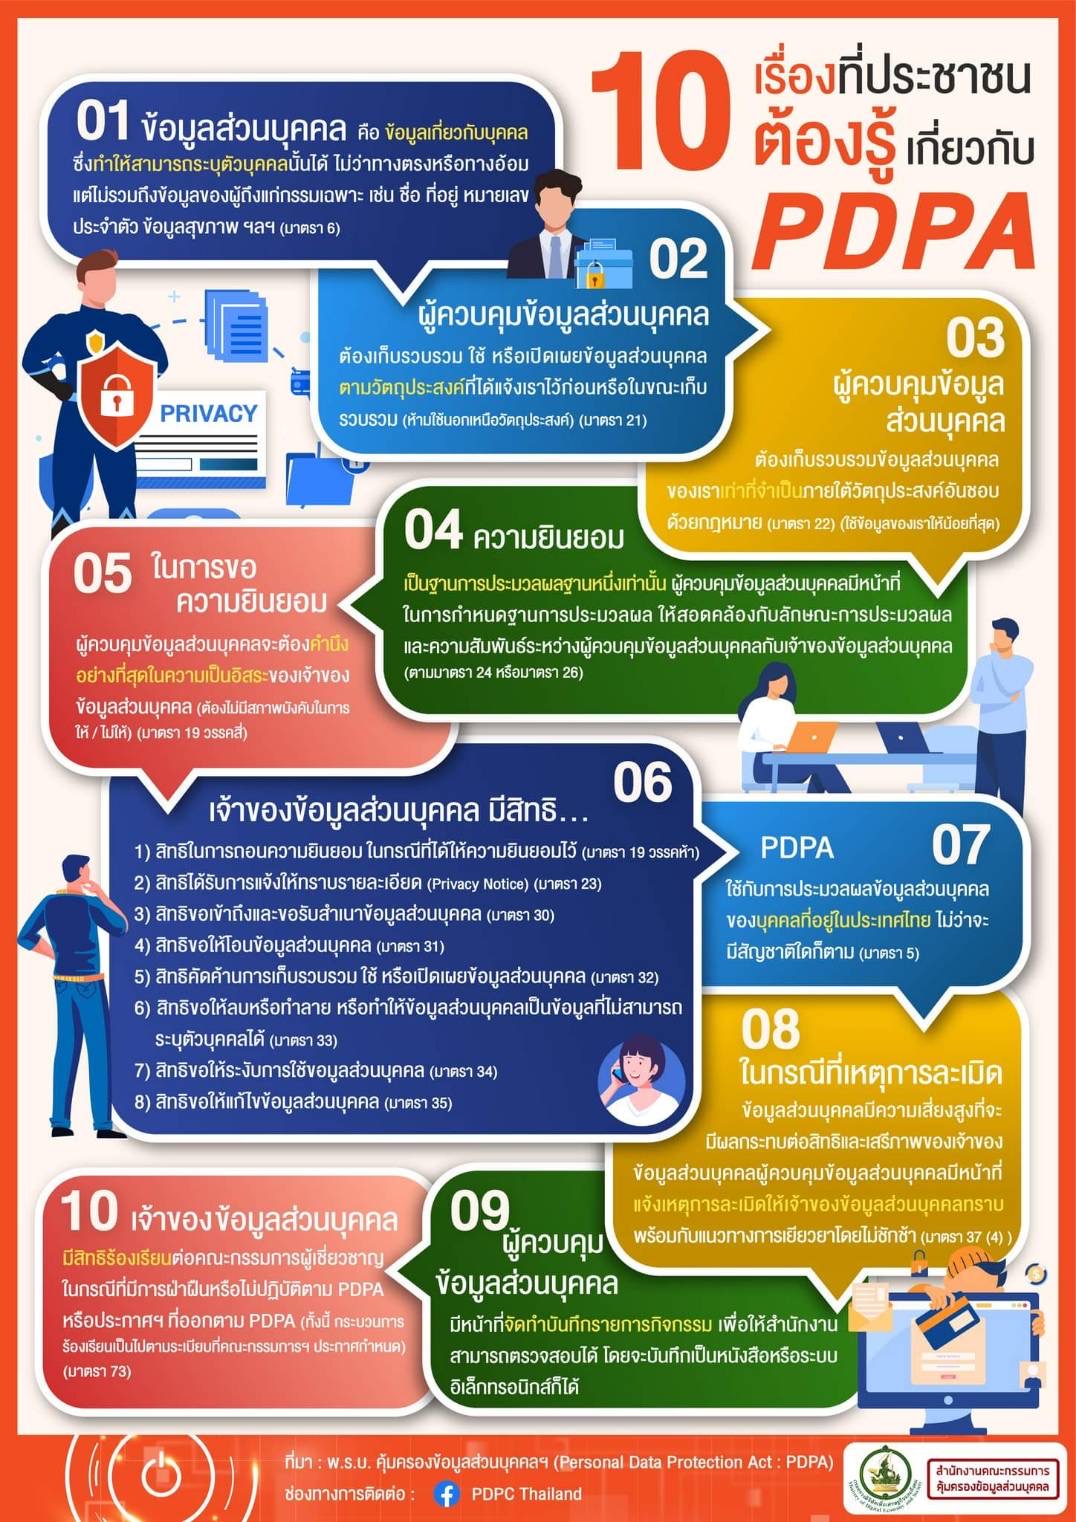 10 เรื่องมี่ประชาชนต้องรู้เกี่ยวกับ PDPA